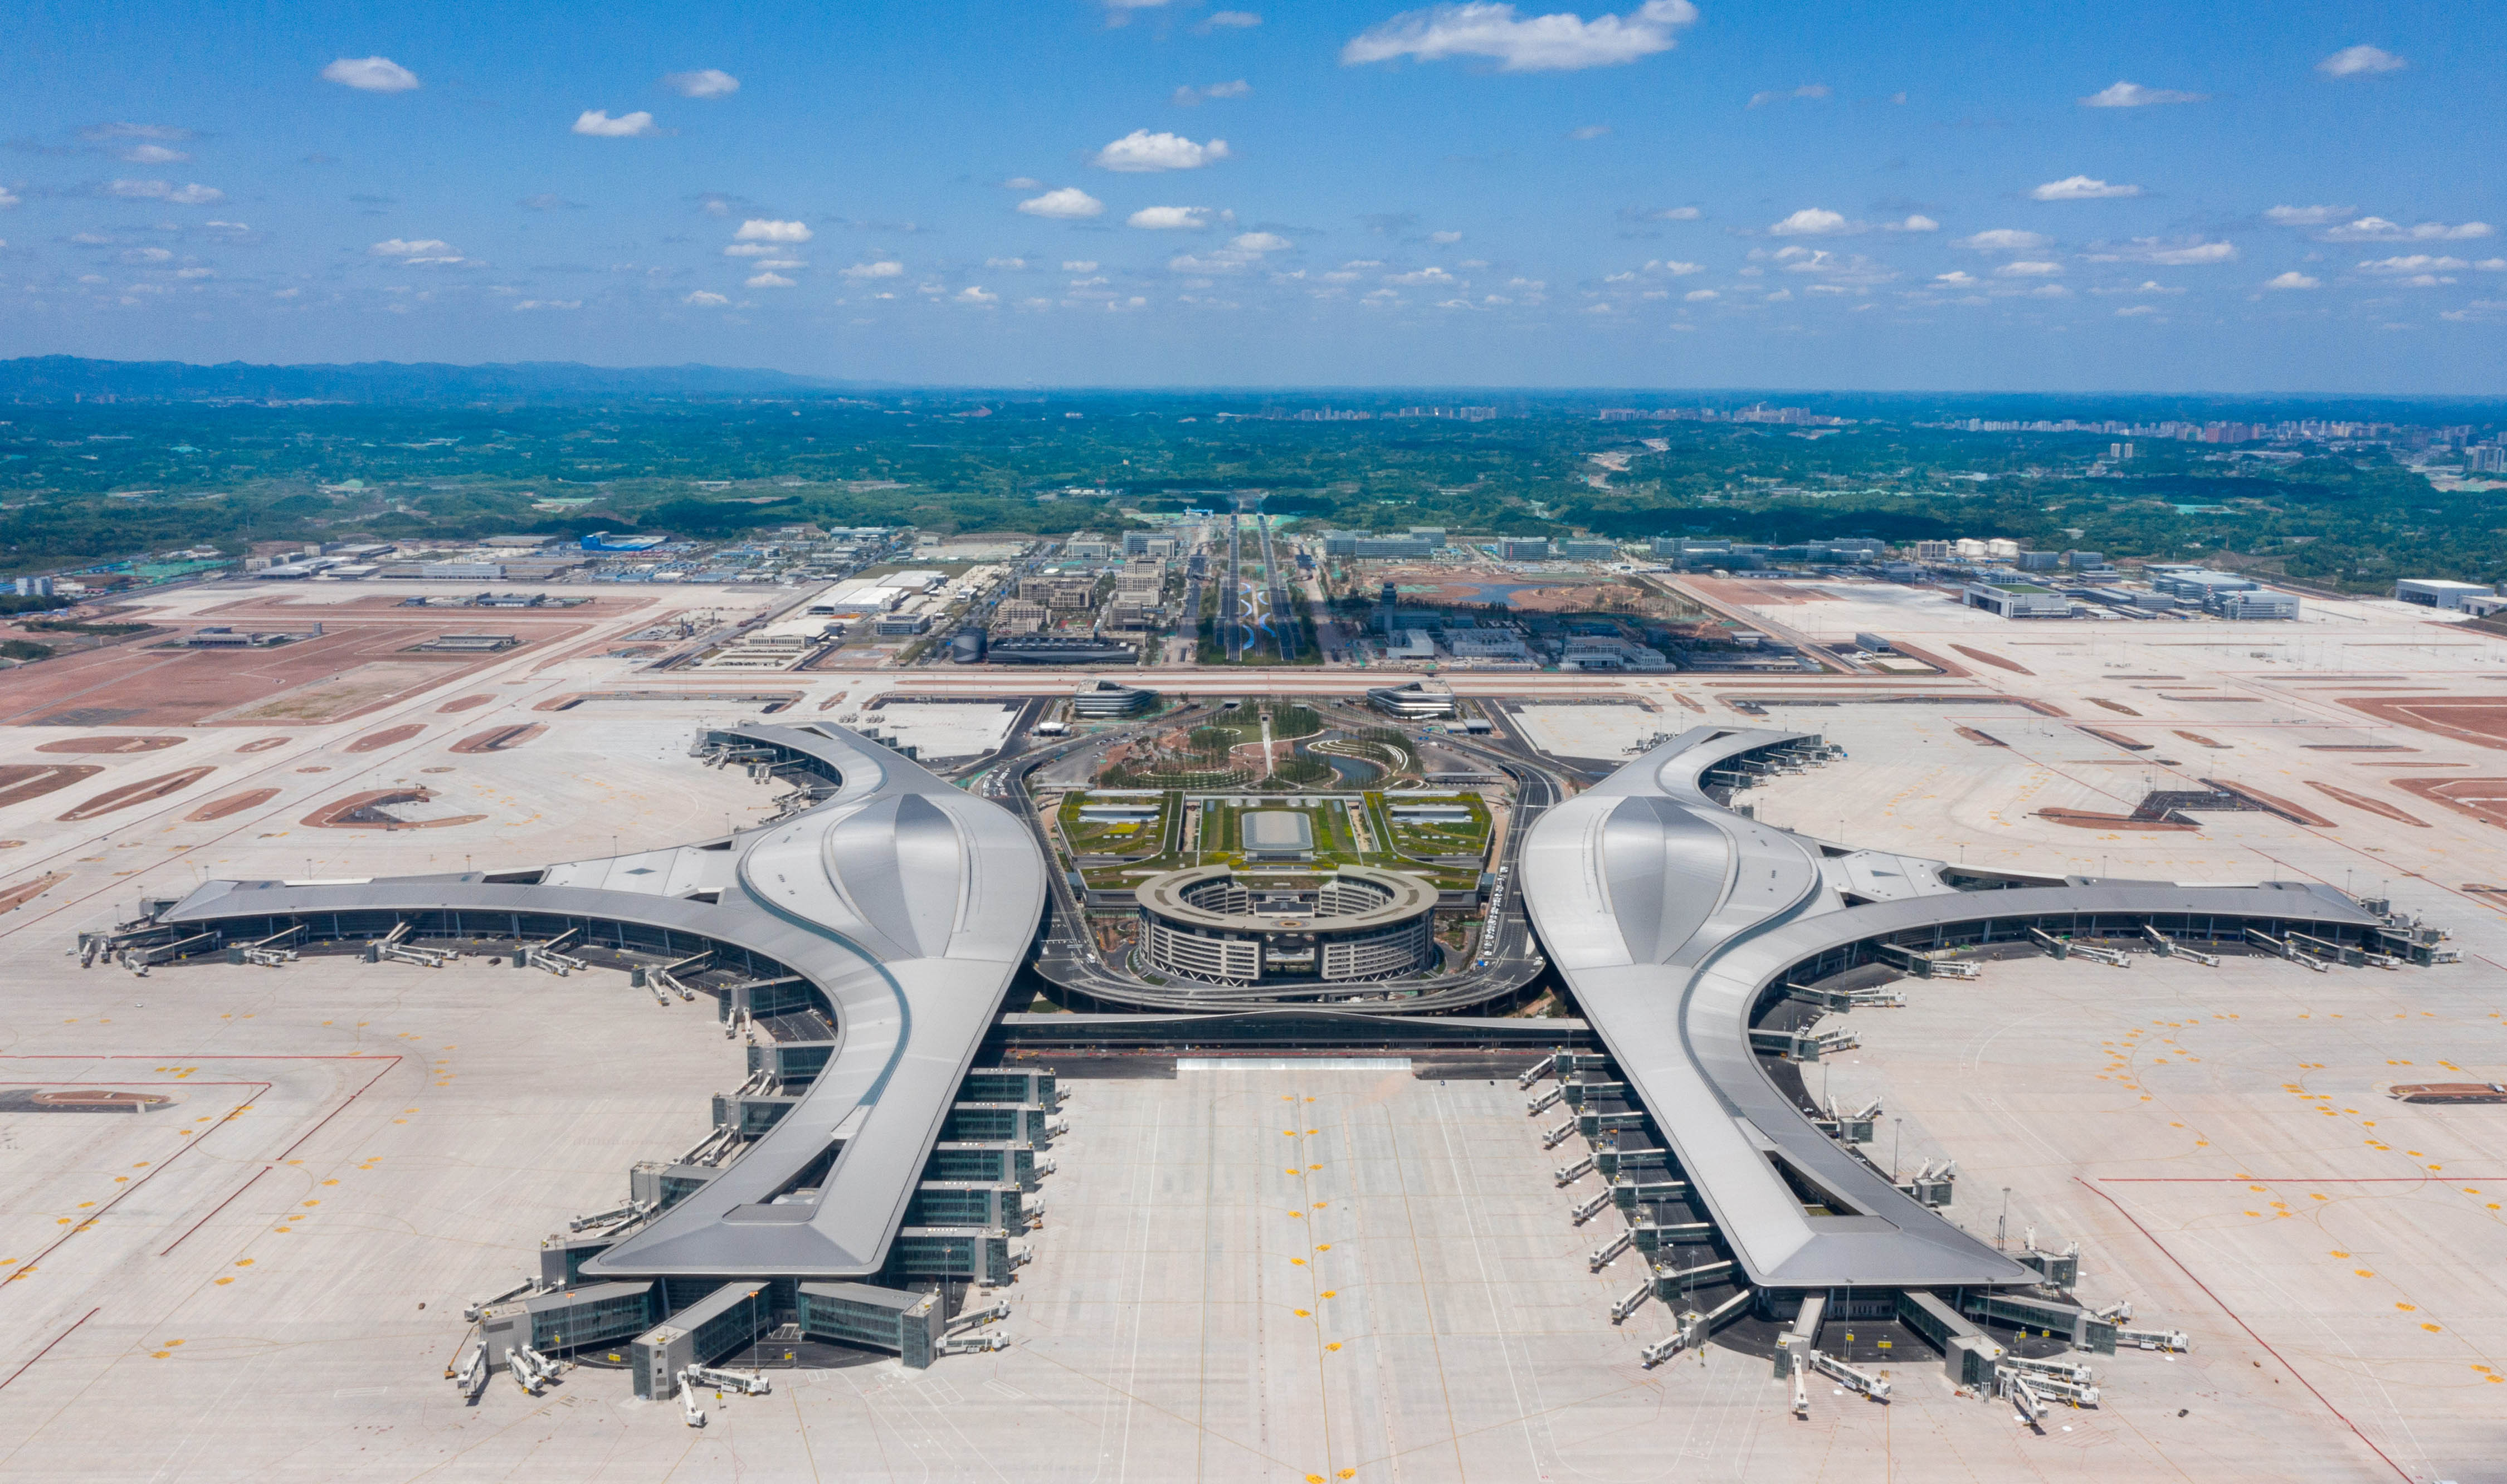 这是4月26日拍摄的成都天府国际机场(无人机照片)